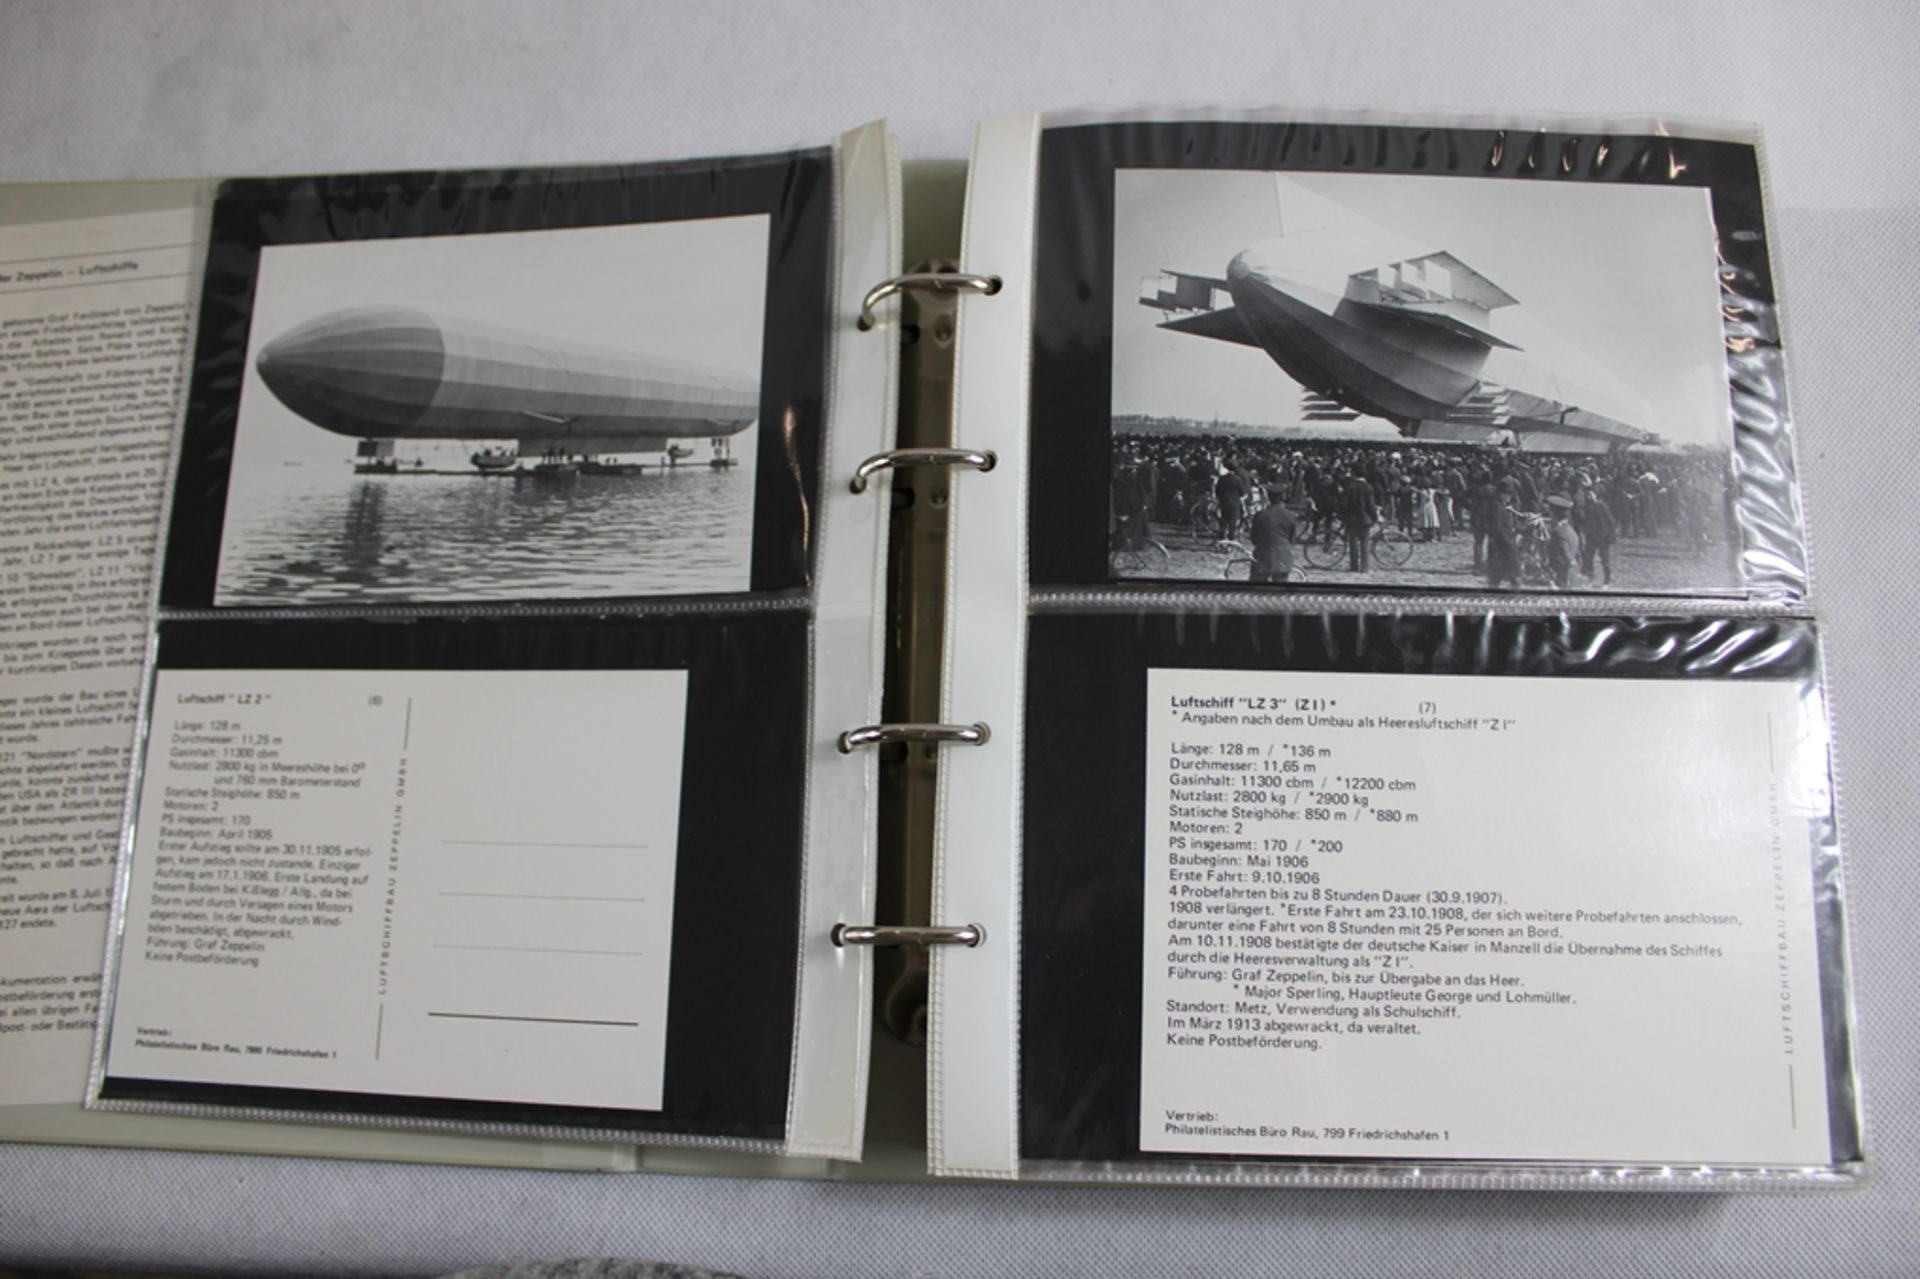 5 Alben mit über 1200 Postkarten Zeppelin Repro 80/90 er Jahre, vom Zeppelin Museum Friedrichshafen - Bild 4 aus 8